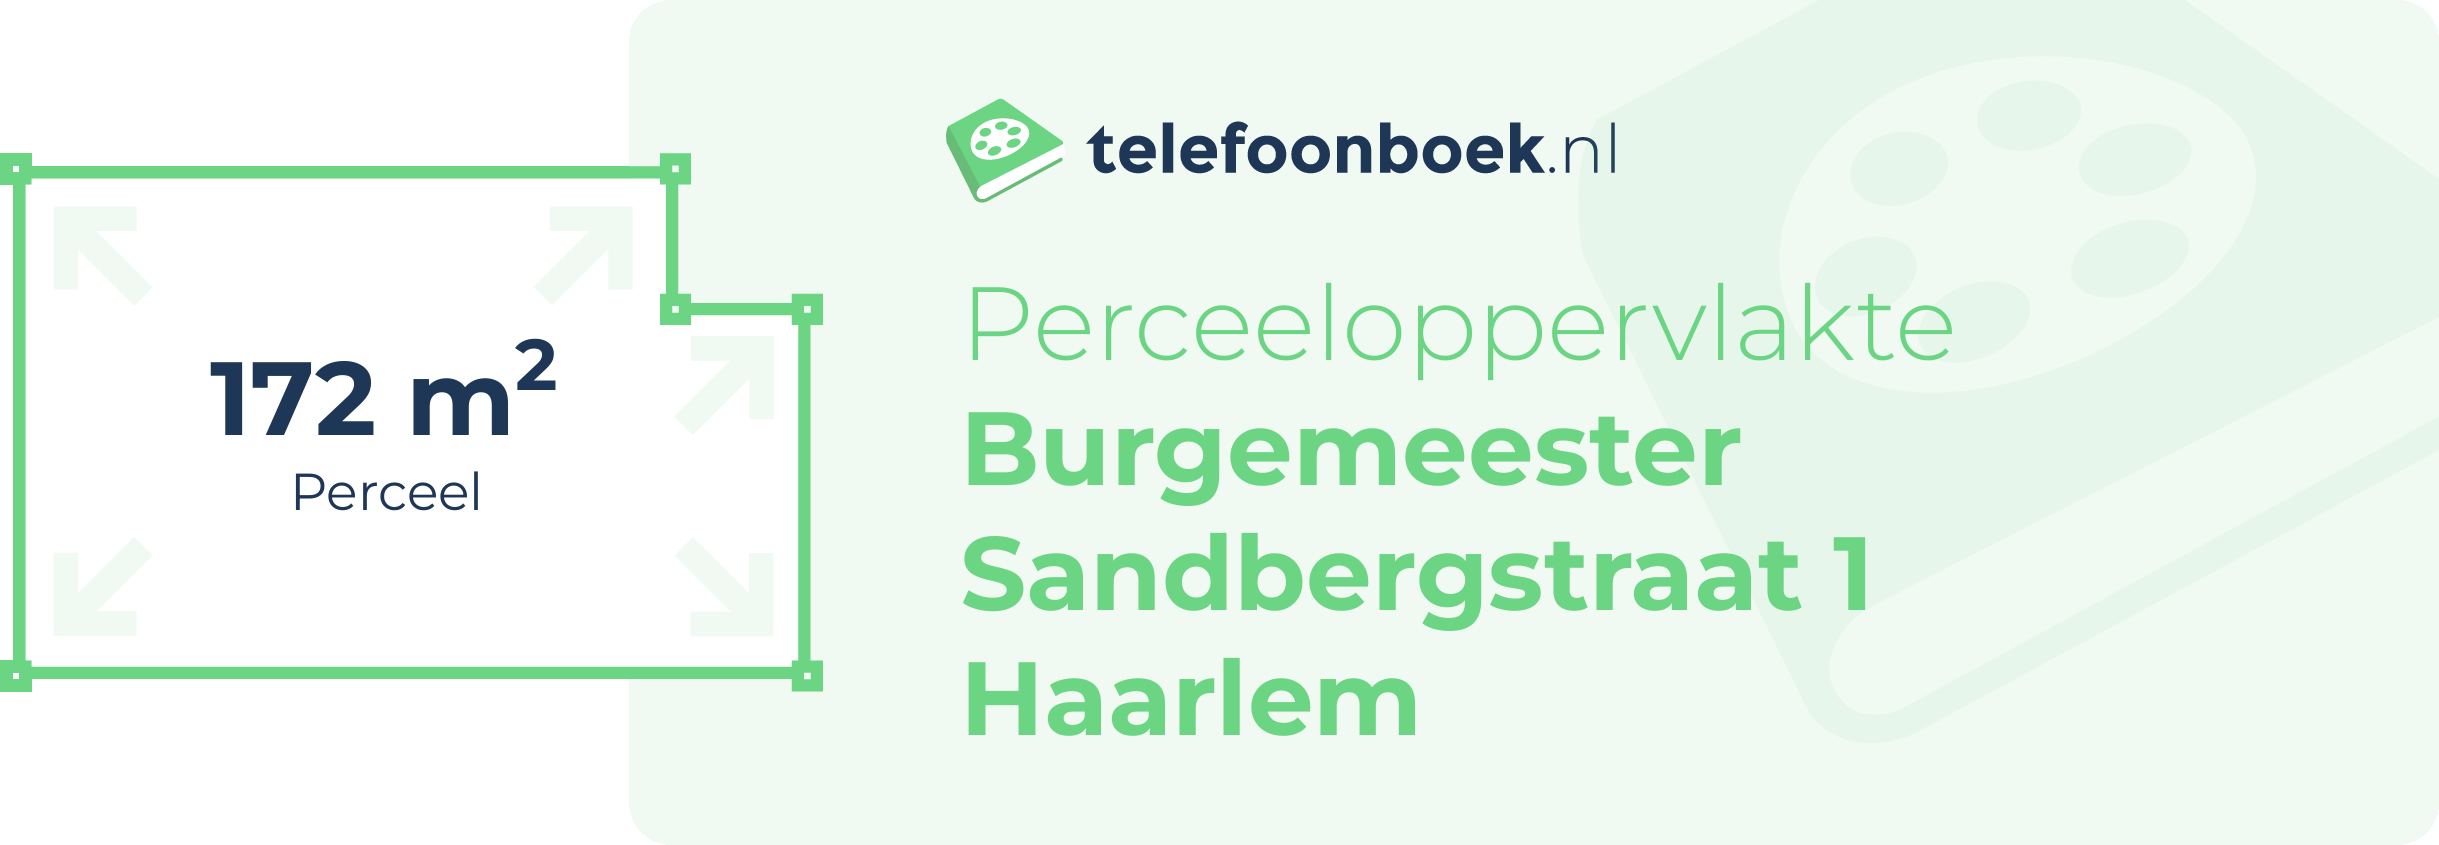 Perceeloppervlakte Burgemeester Sandbergstraat 1 Haarlem